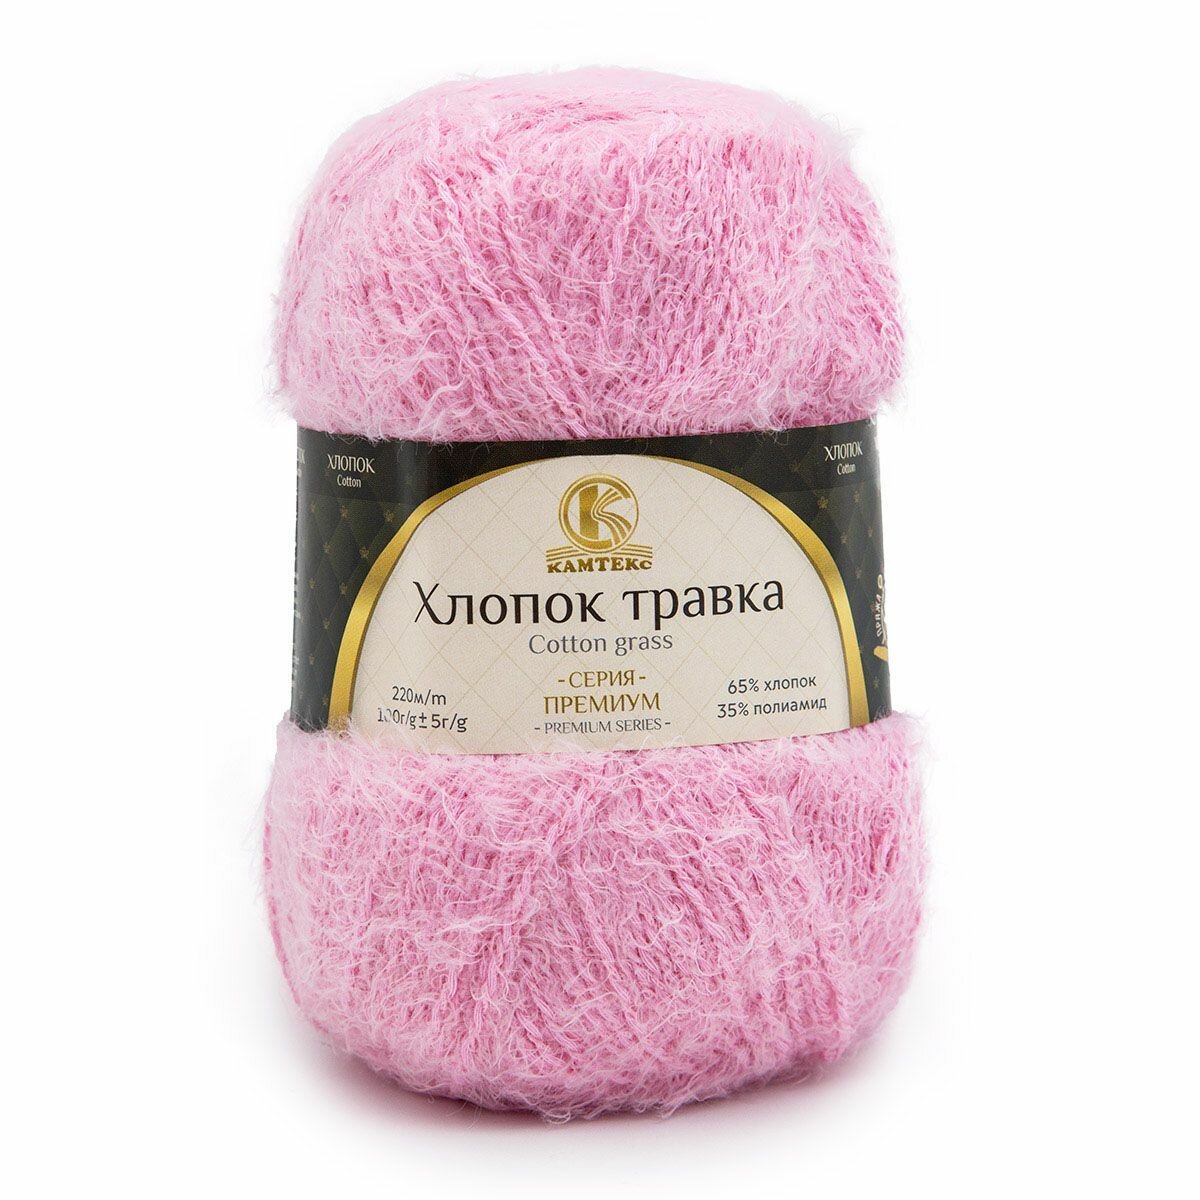 Пряжа для вязания Камтекс 'Хлопок Травка', 100г, 220м (65% хлопок, 35% полиамид) (055 светло-розовый), 5 мотков